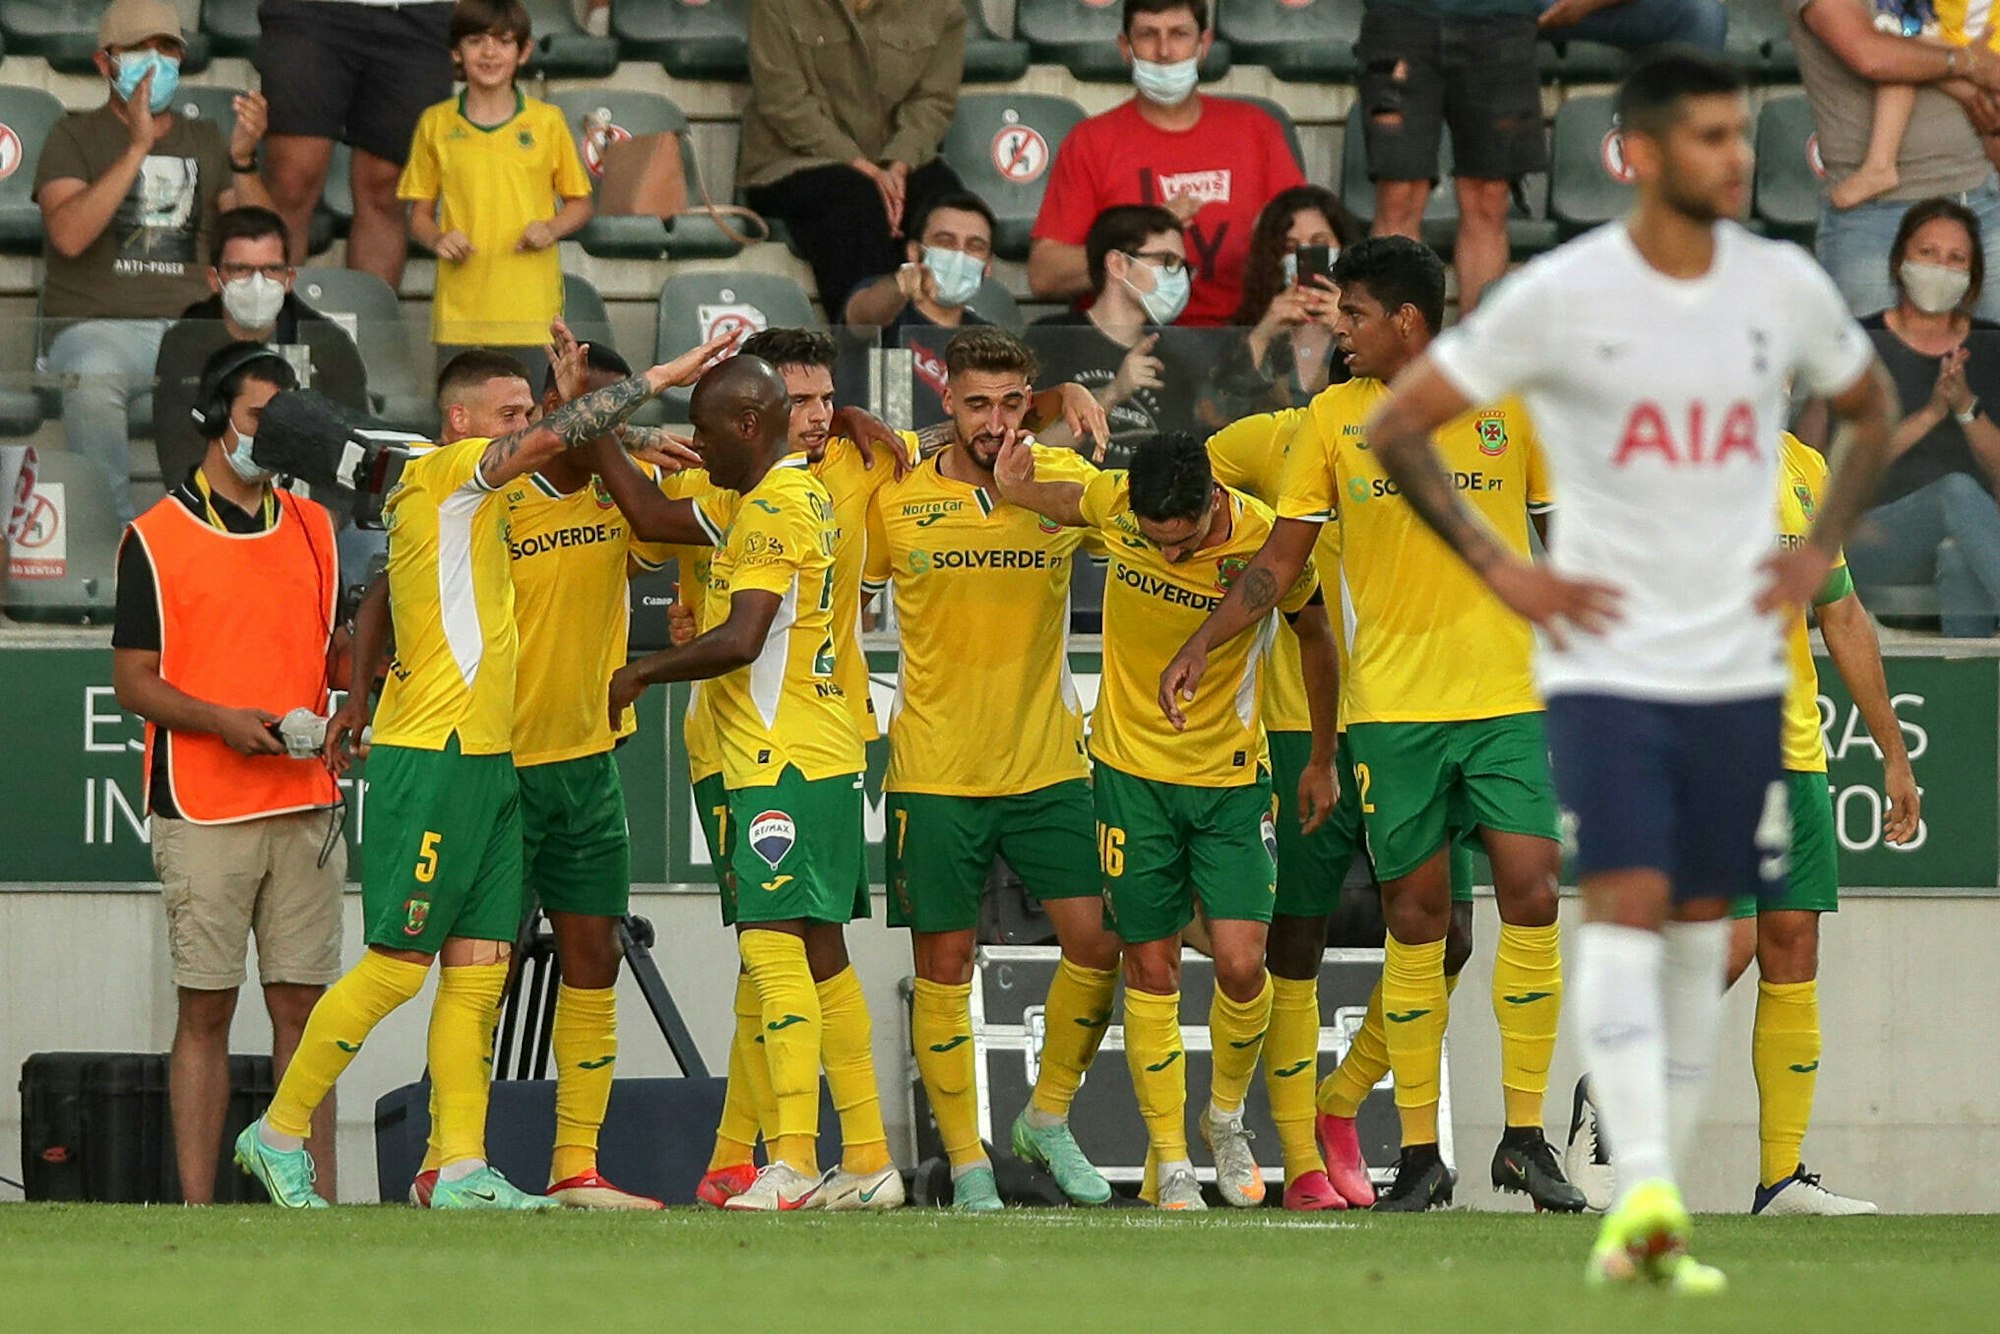 Die Spieler von Pacos de Ferreira feiern im Hintergrund das Tor zum 1:0 gegen Tottenham am 19. August 2021, Cristian Romero ist bedient.